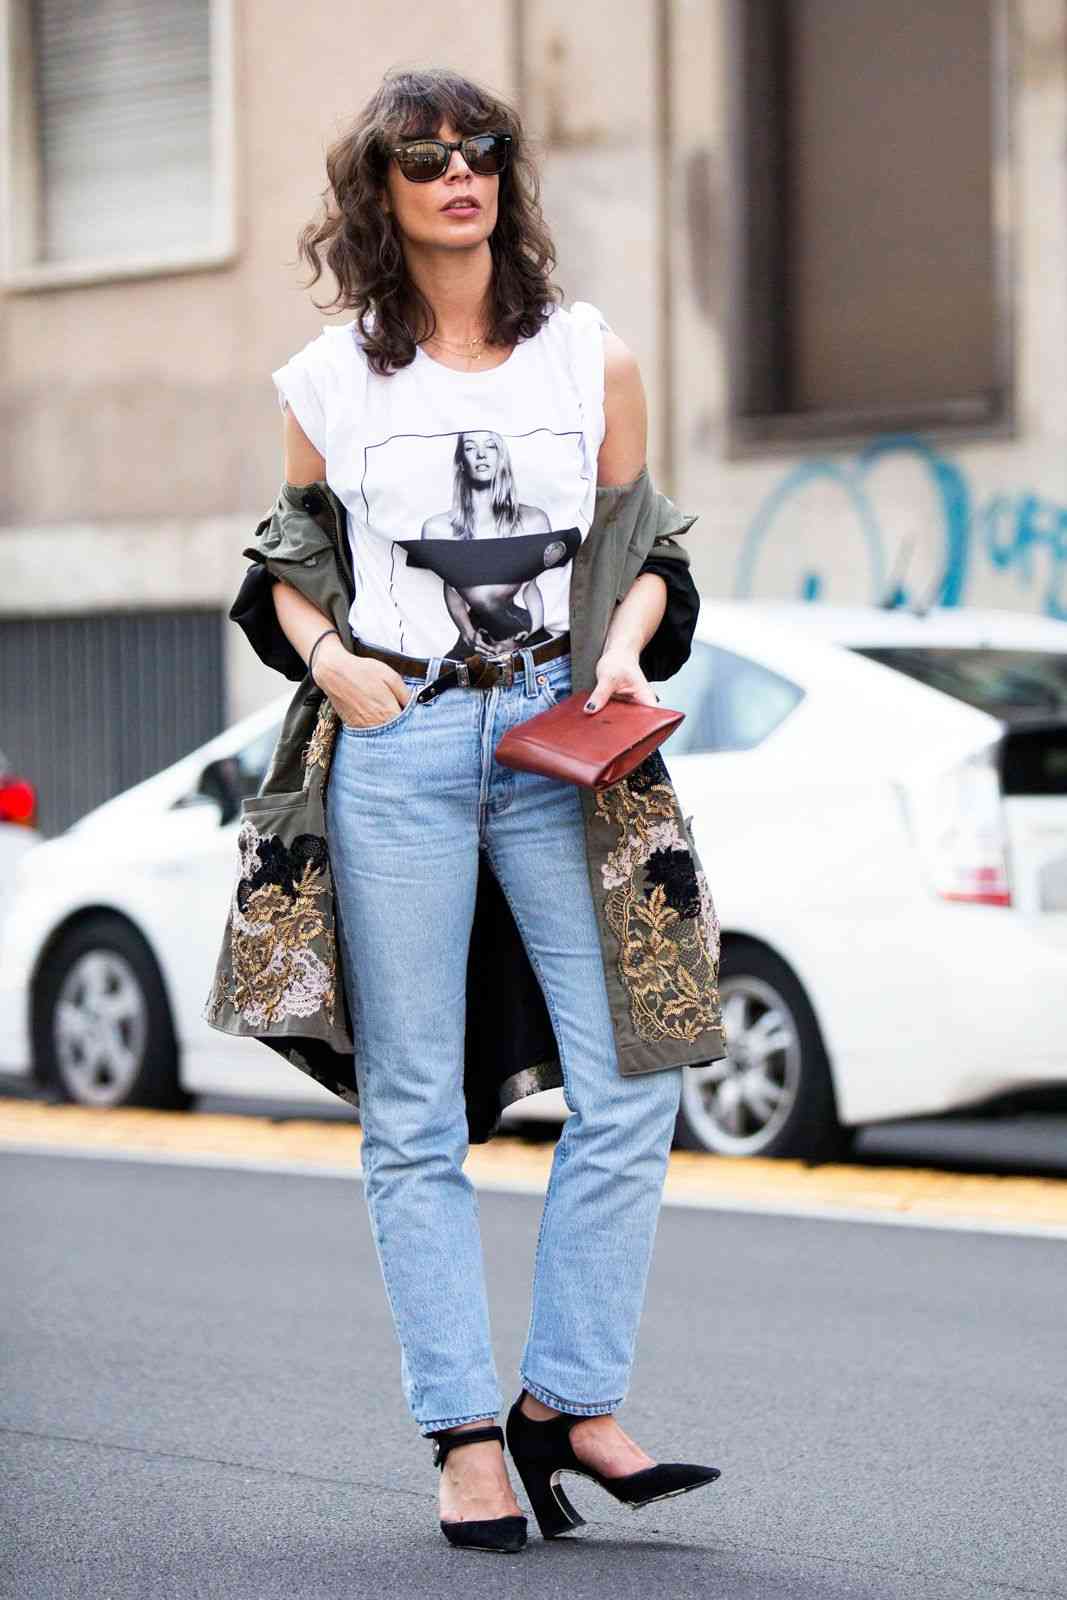 Os jeans da mamãe combinam as tendências da moda 2019 com casaco branco top trench casaco curto